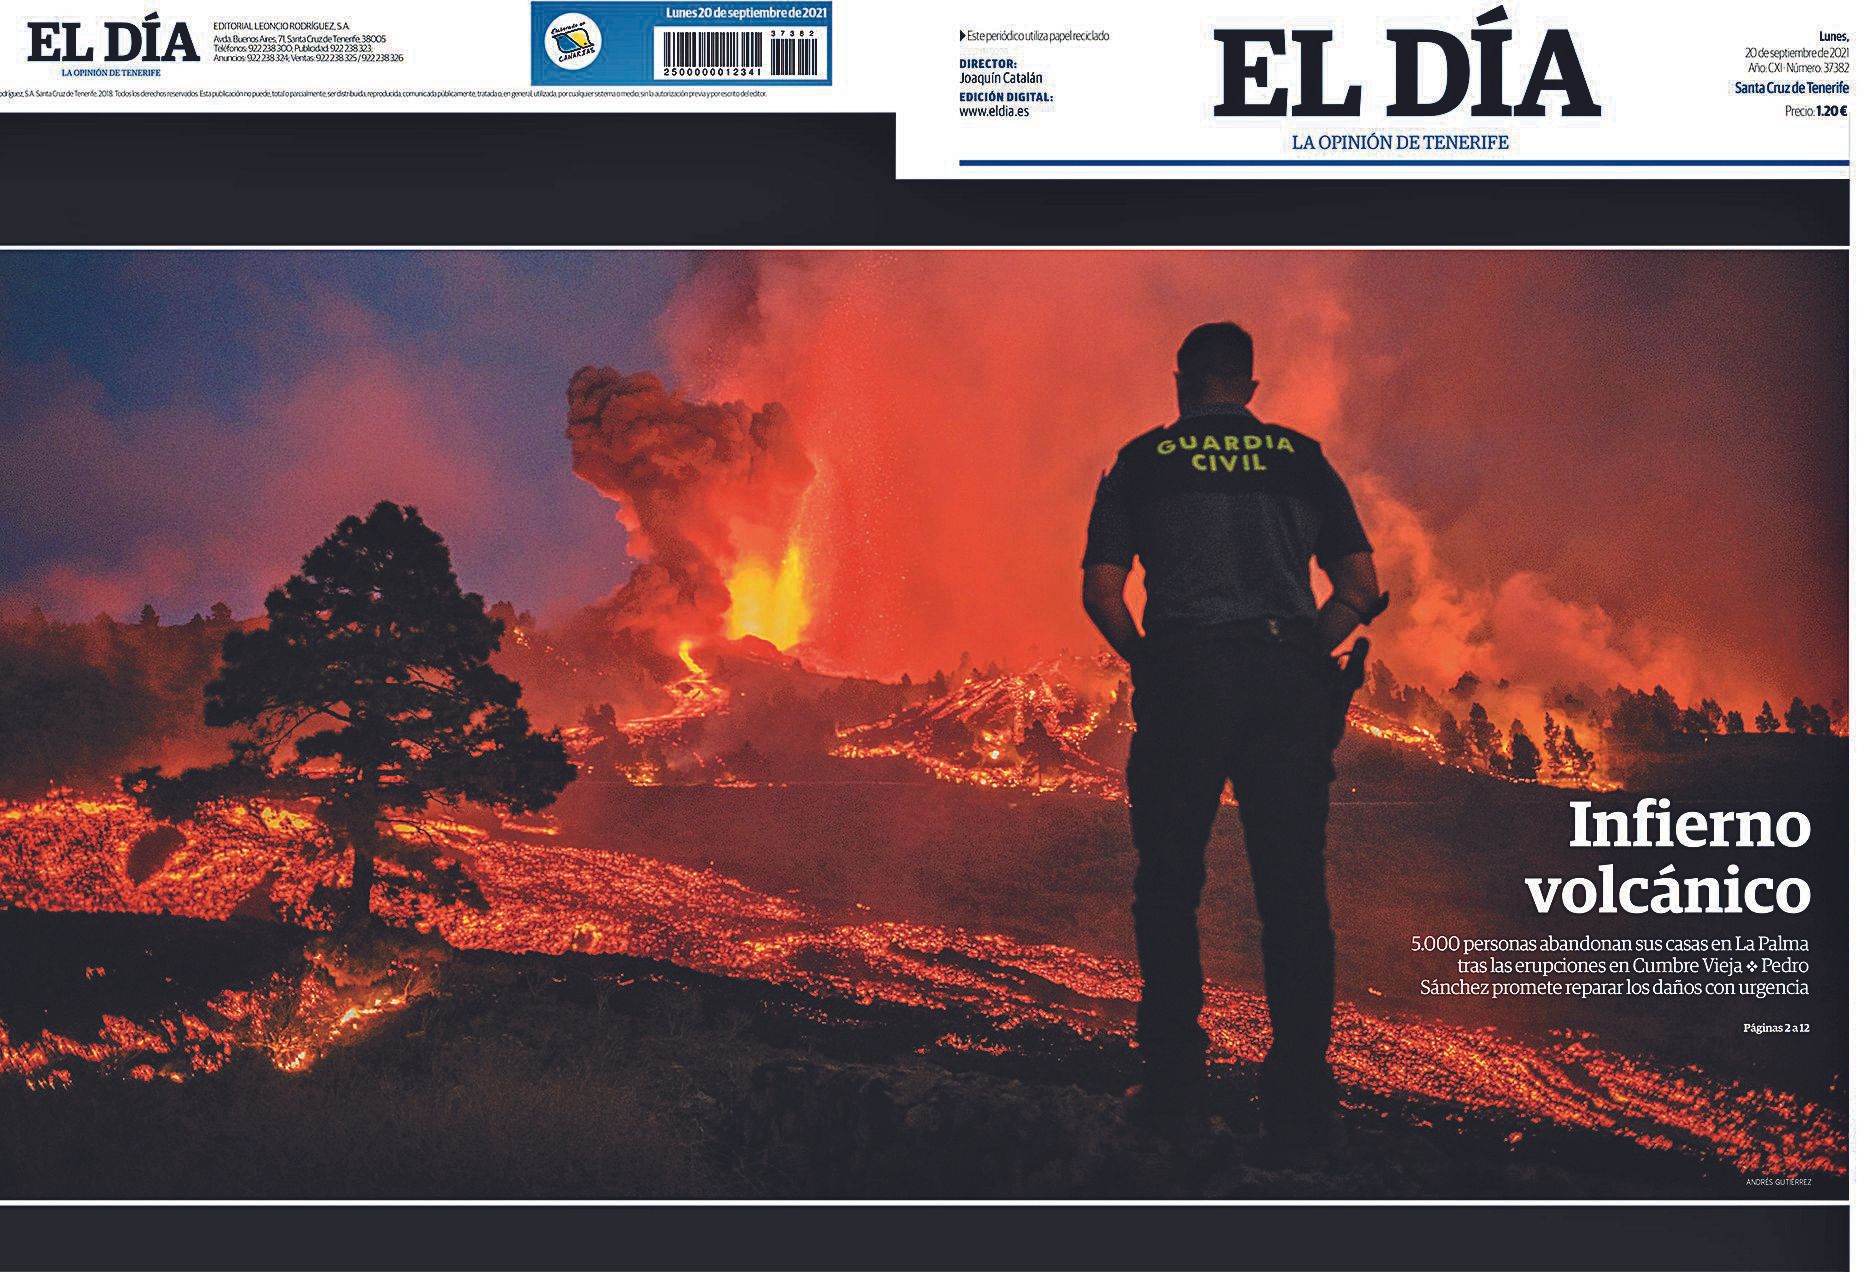 Portada del periódico El Día tras la erupción del volcán de La Palma.